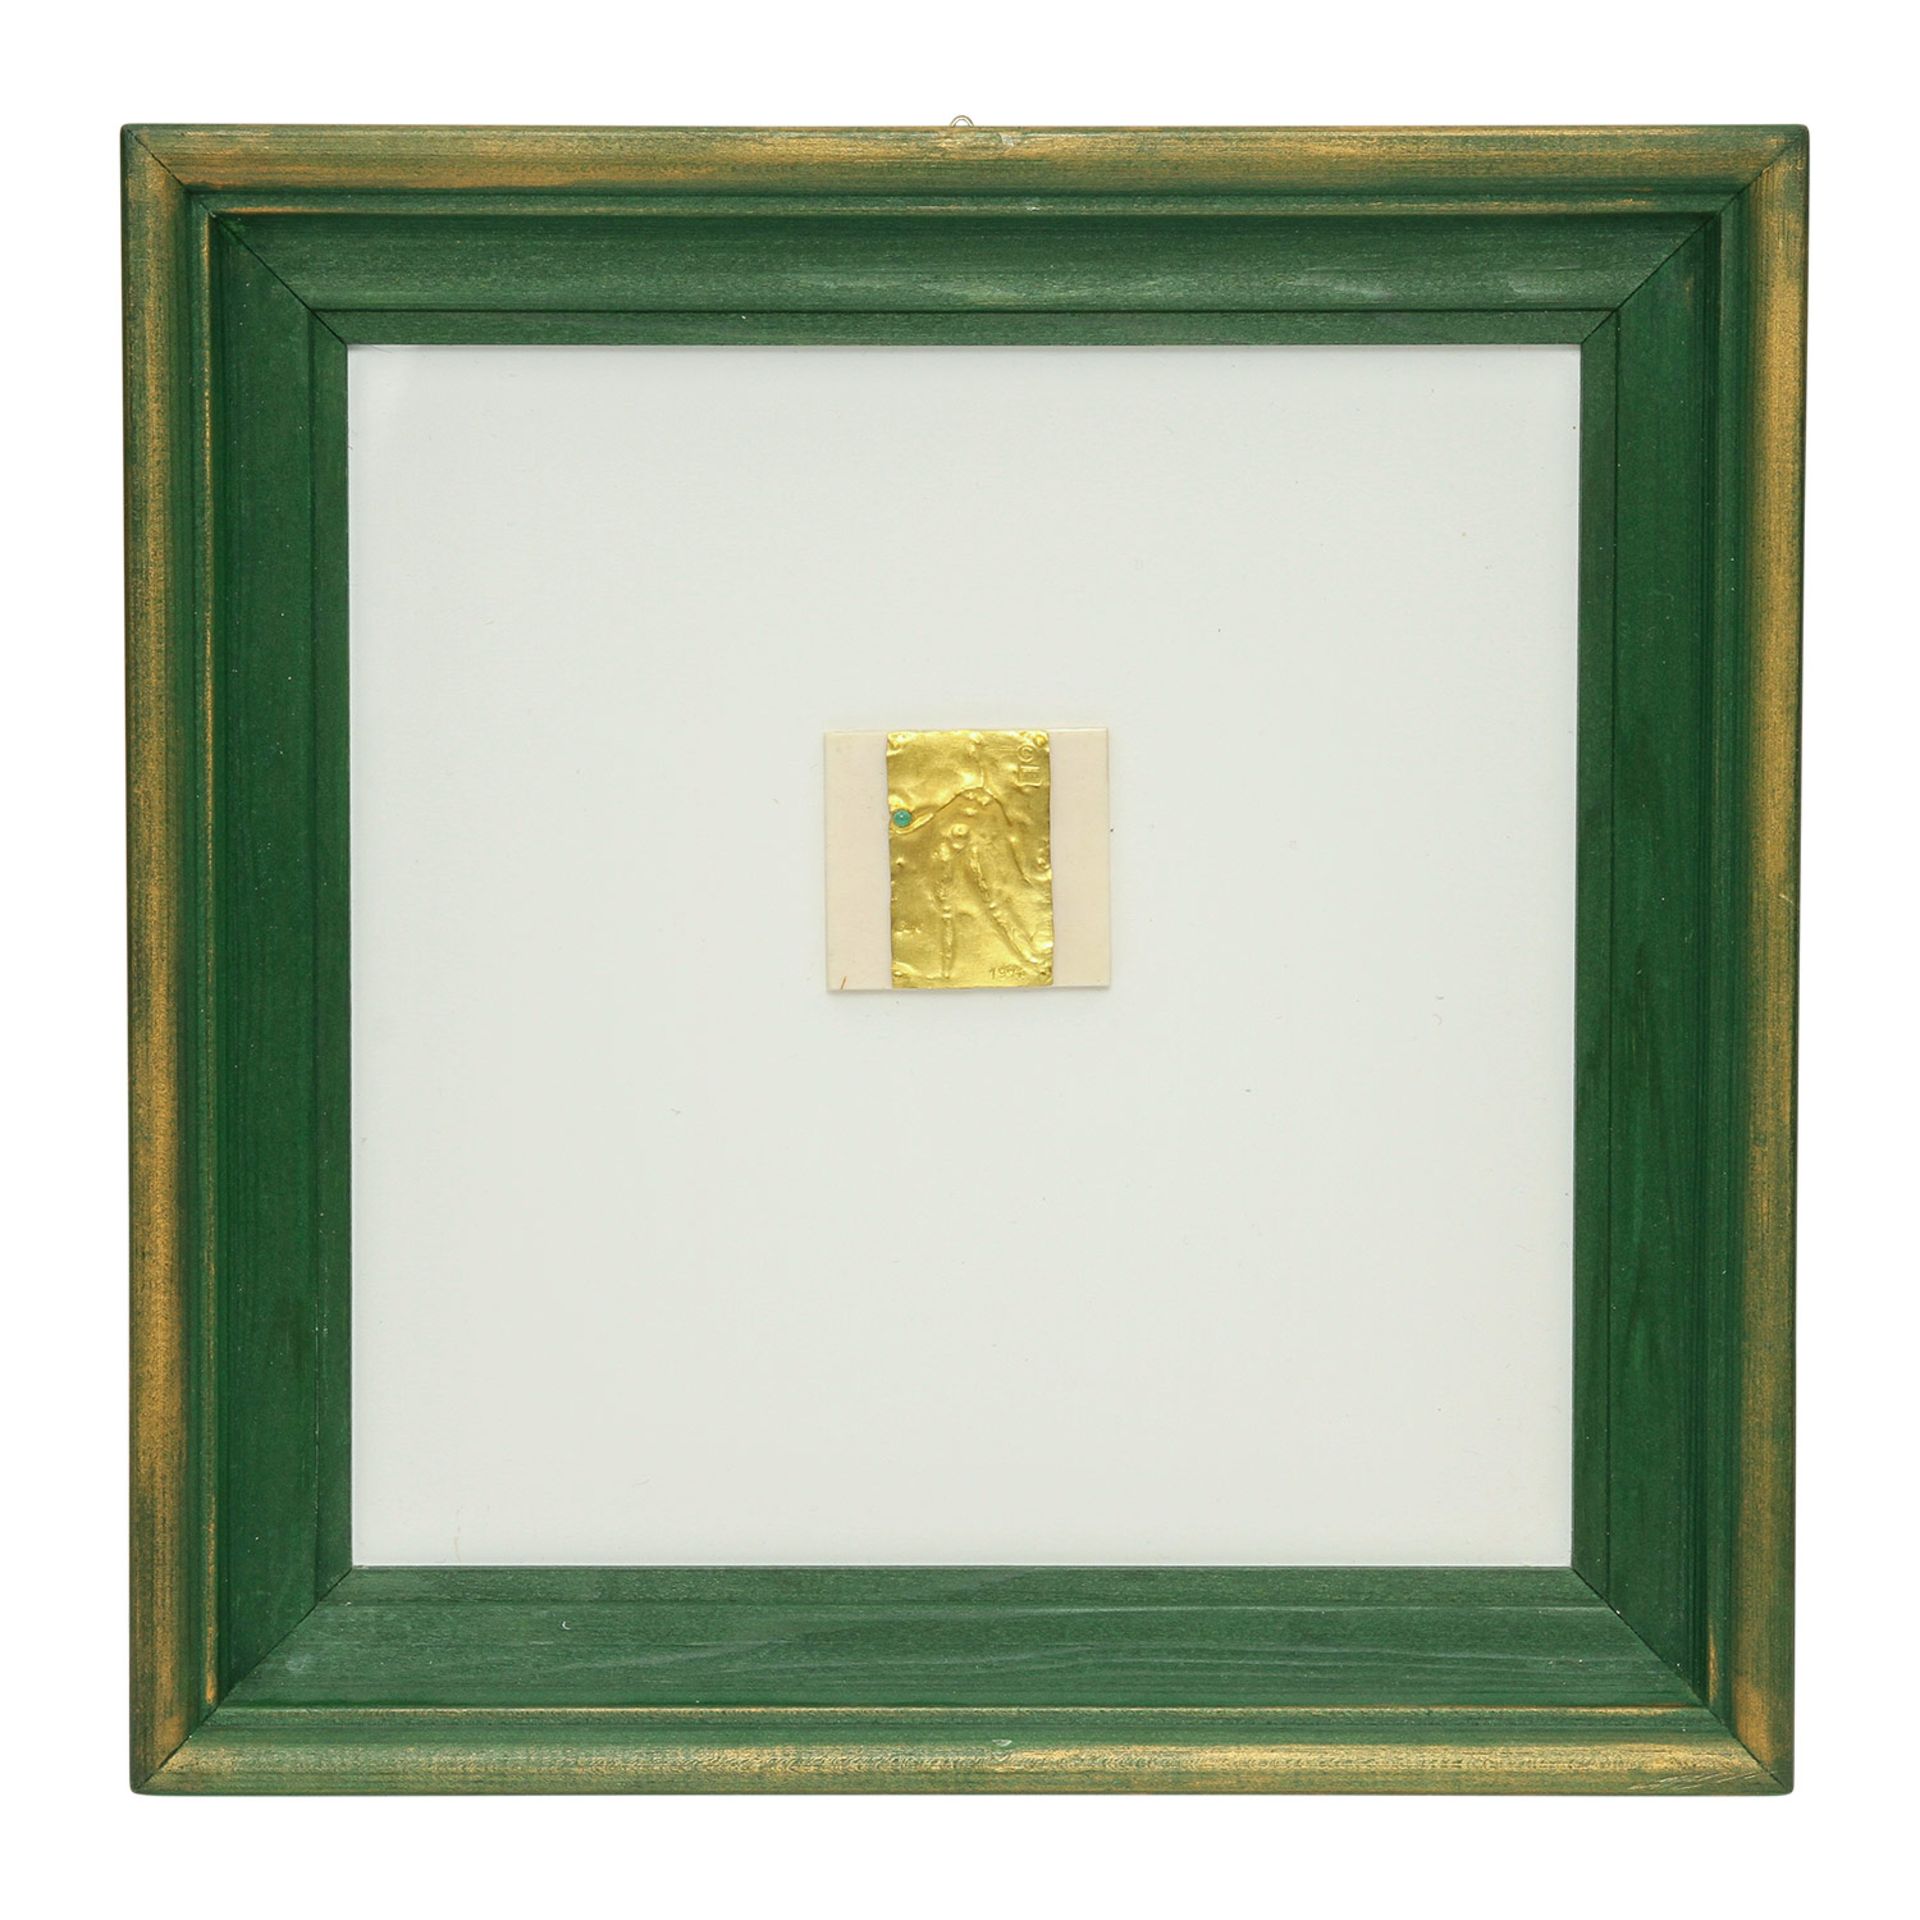 Goldminiatur "Frauenakt" (1974) von E. BURGEL,Gold 900, mit 1 Smaragd, getrieben + ziseliert, auf